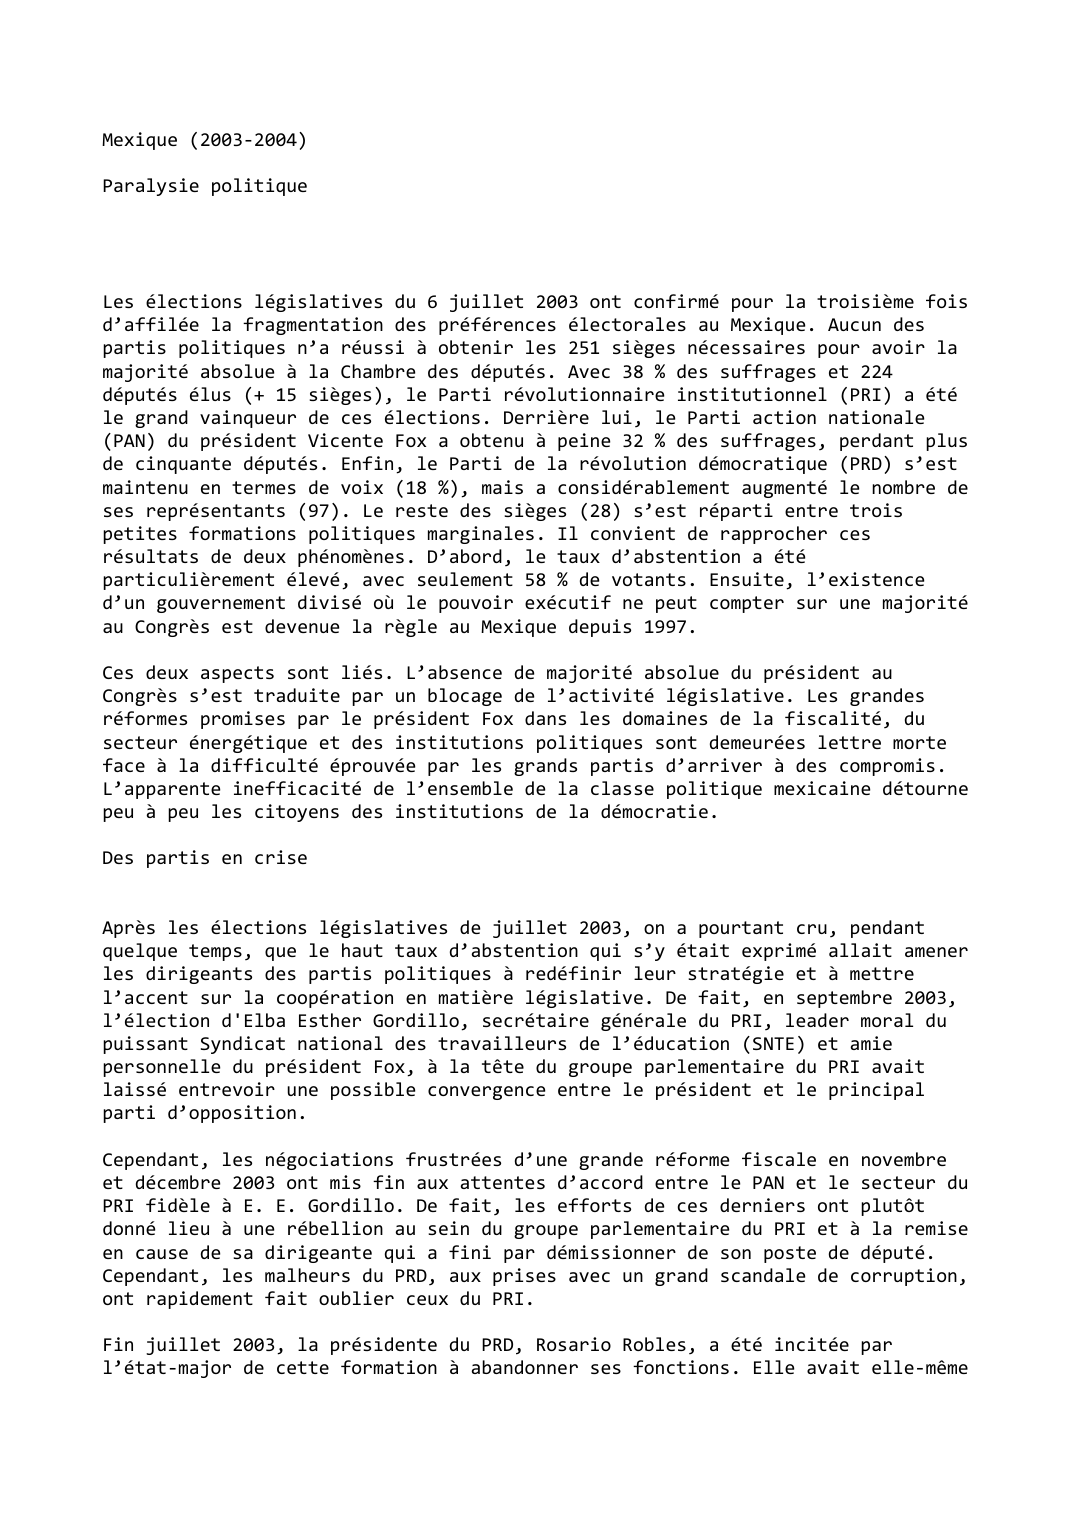 Prévisualisation du document Mexique (2003-2004)

Paralysie politique